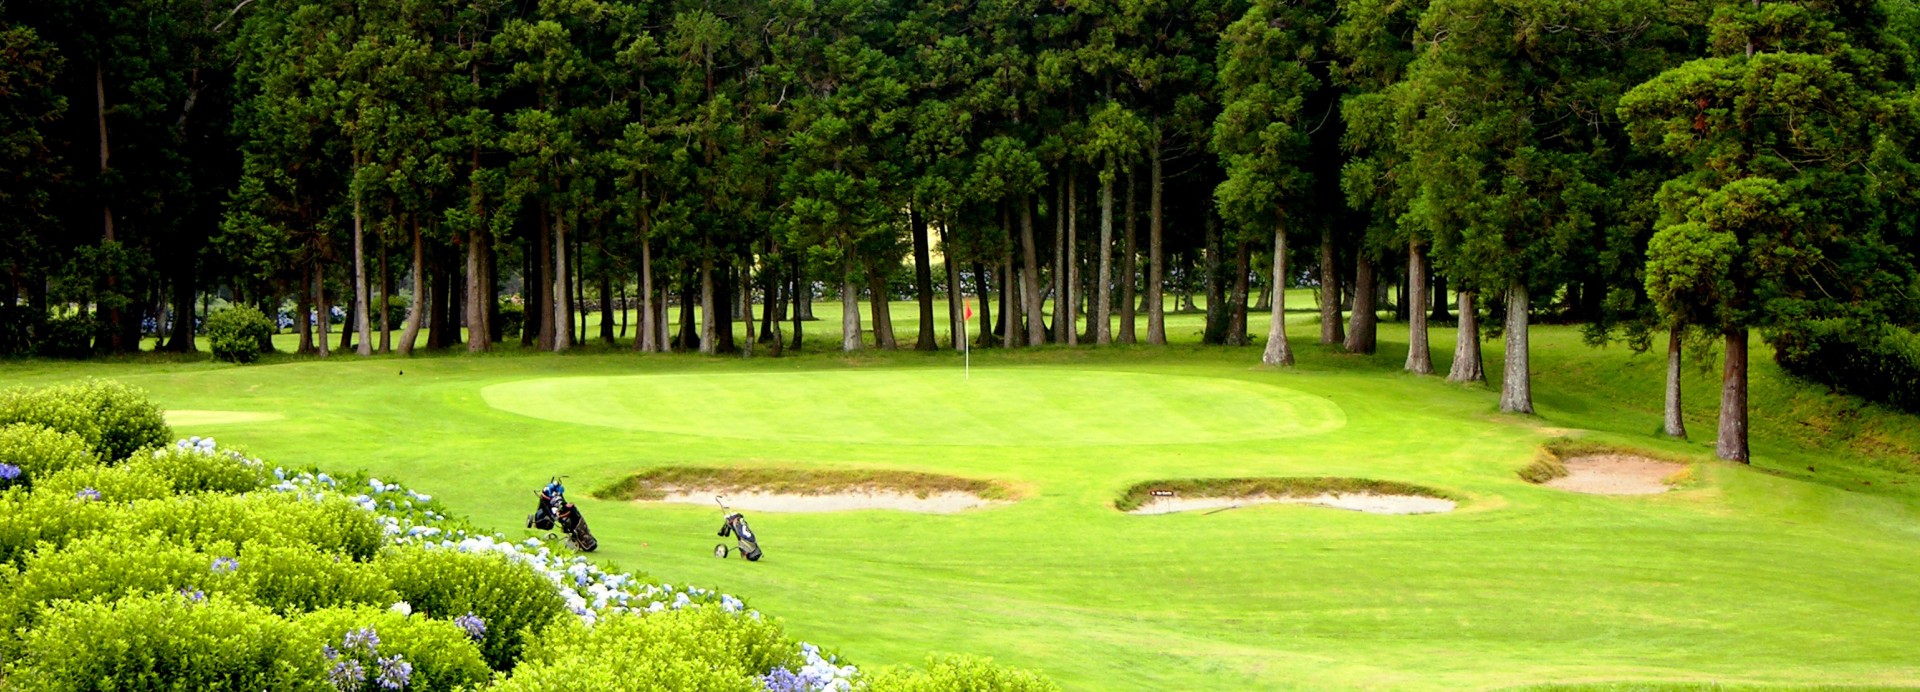 Terceira Golf Course  | Golfové zájezdy, golfová dovolená, luxusní golf